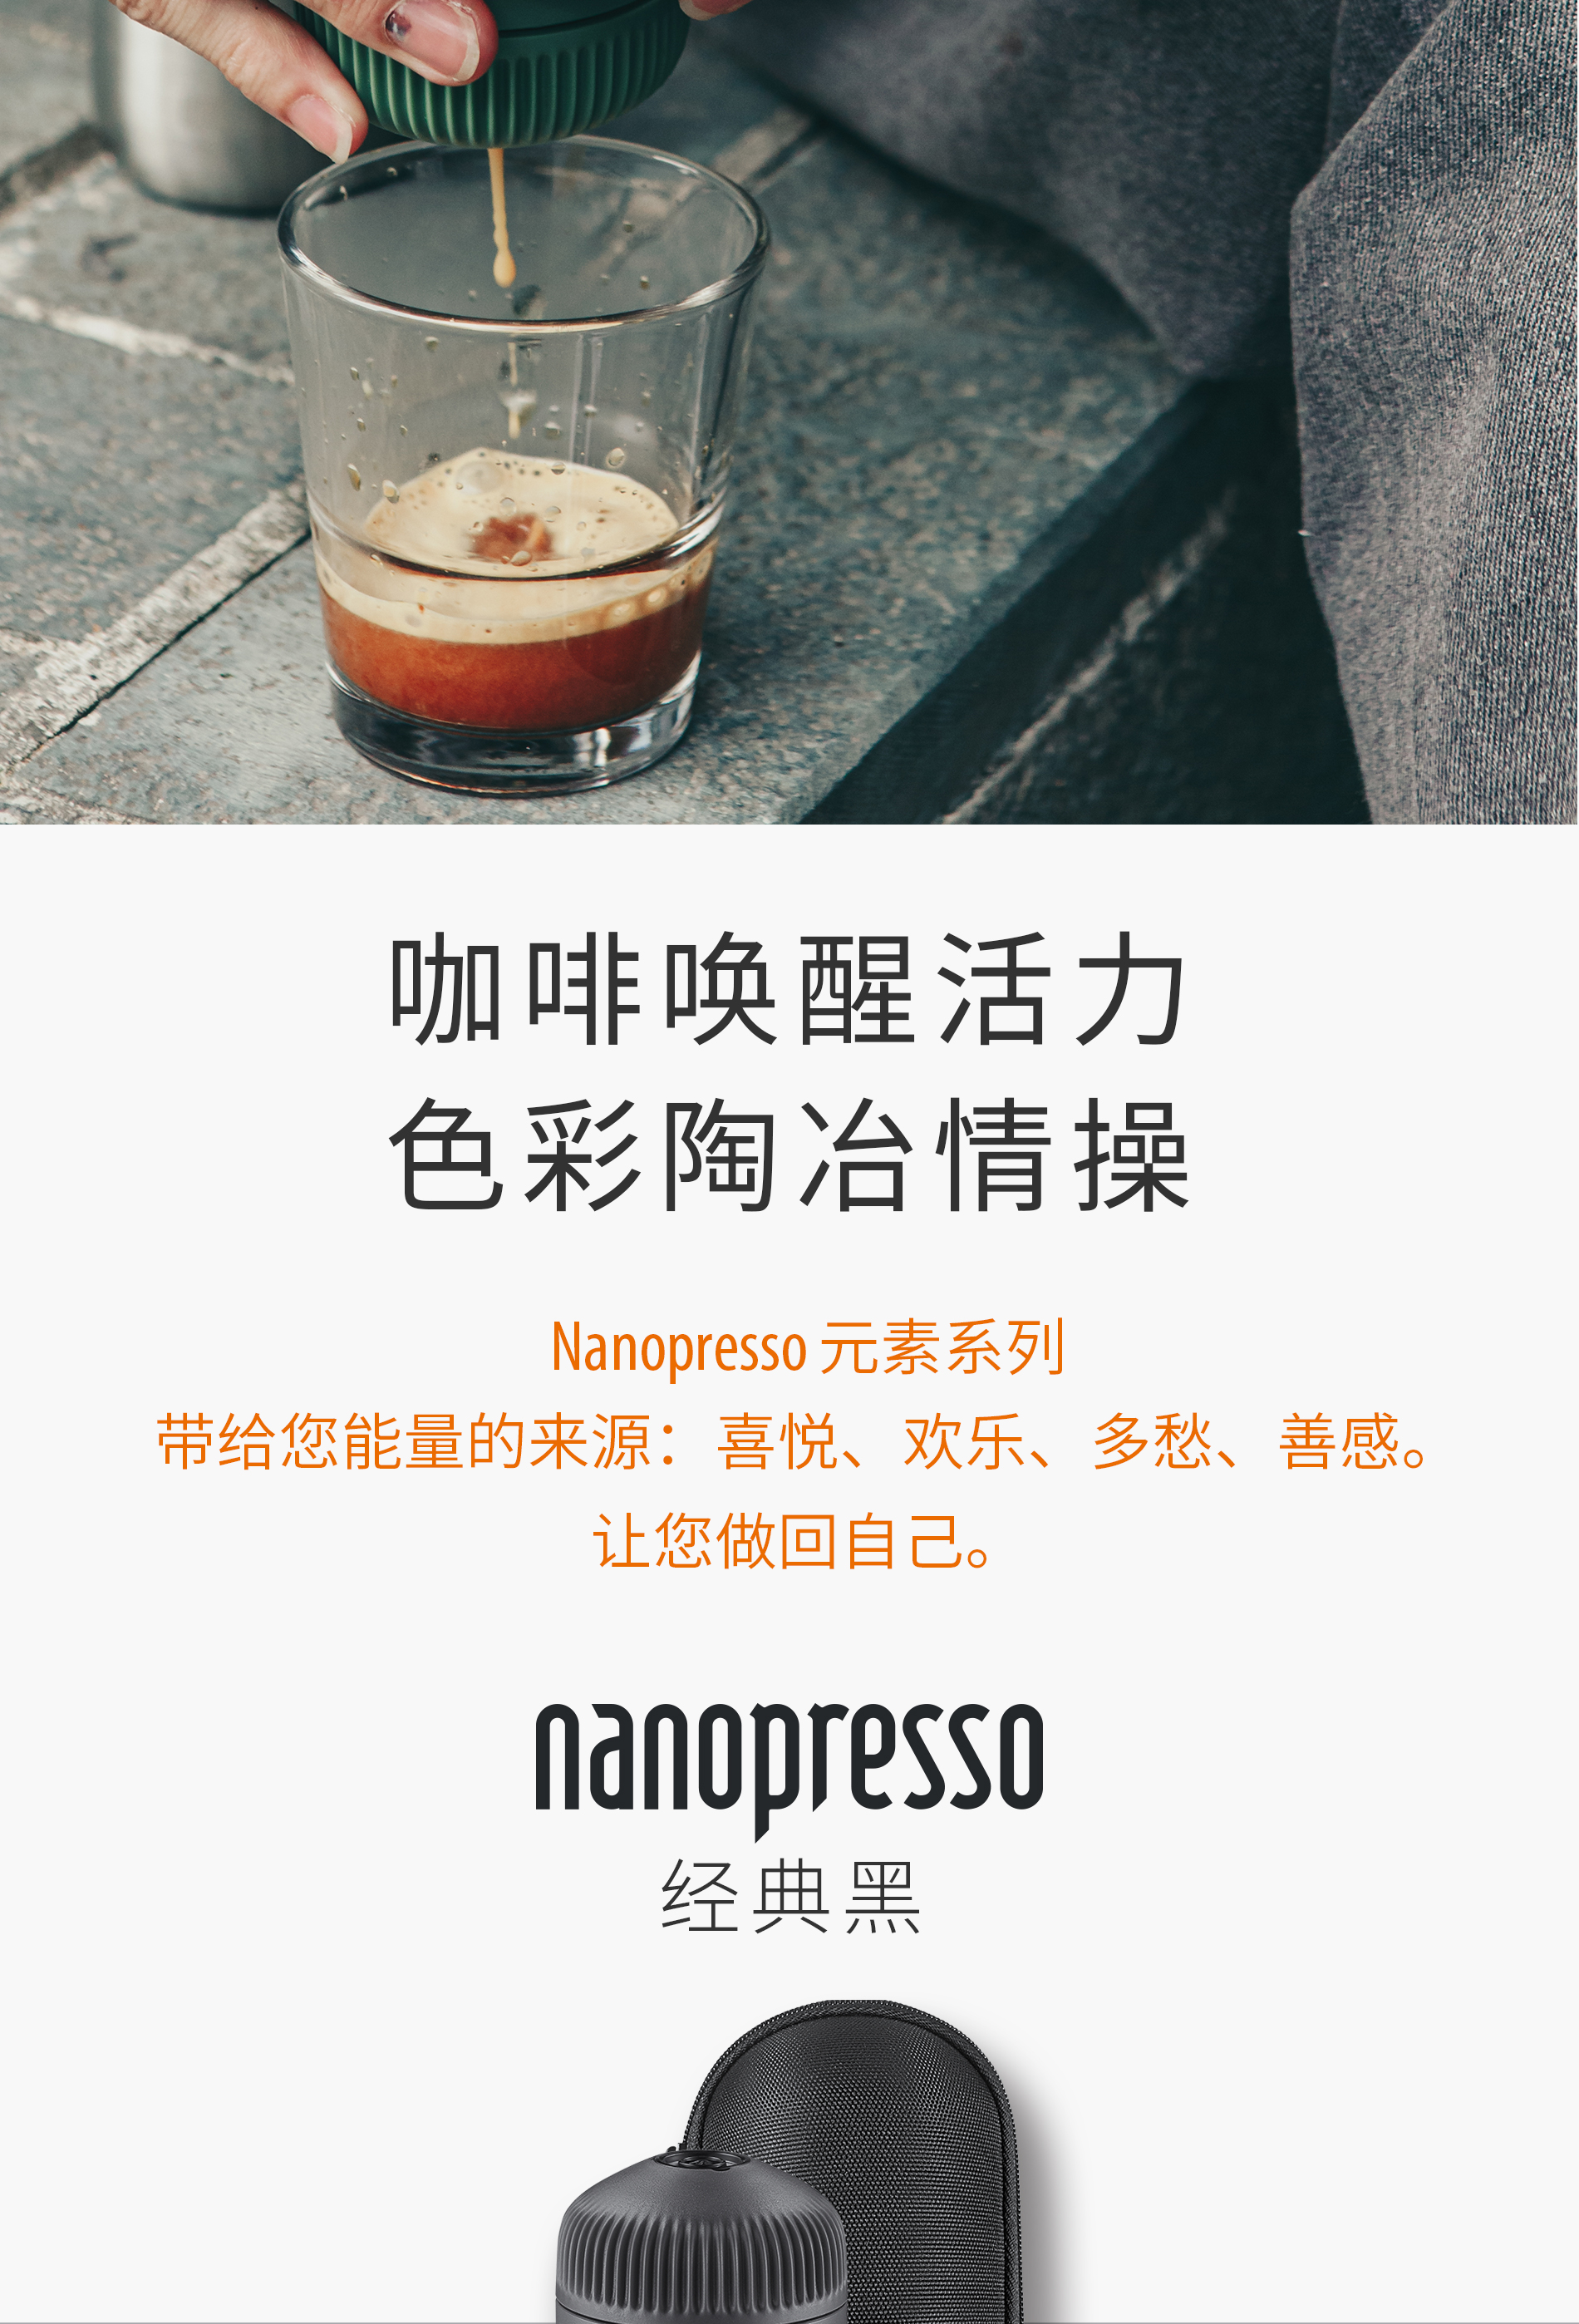 Nanopresso+Case便携式意式浓缩咖啡机